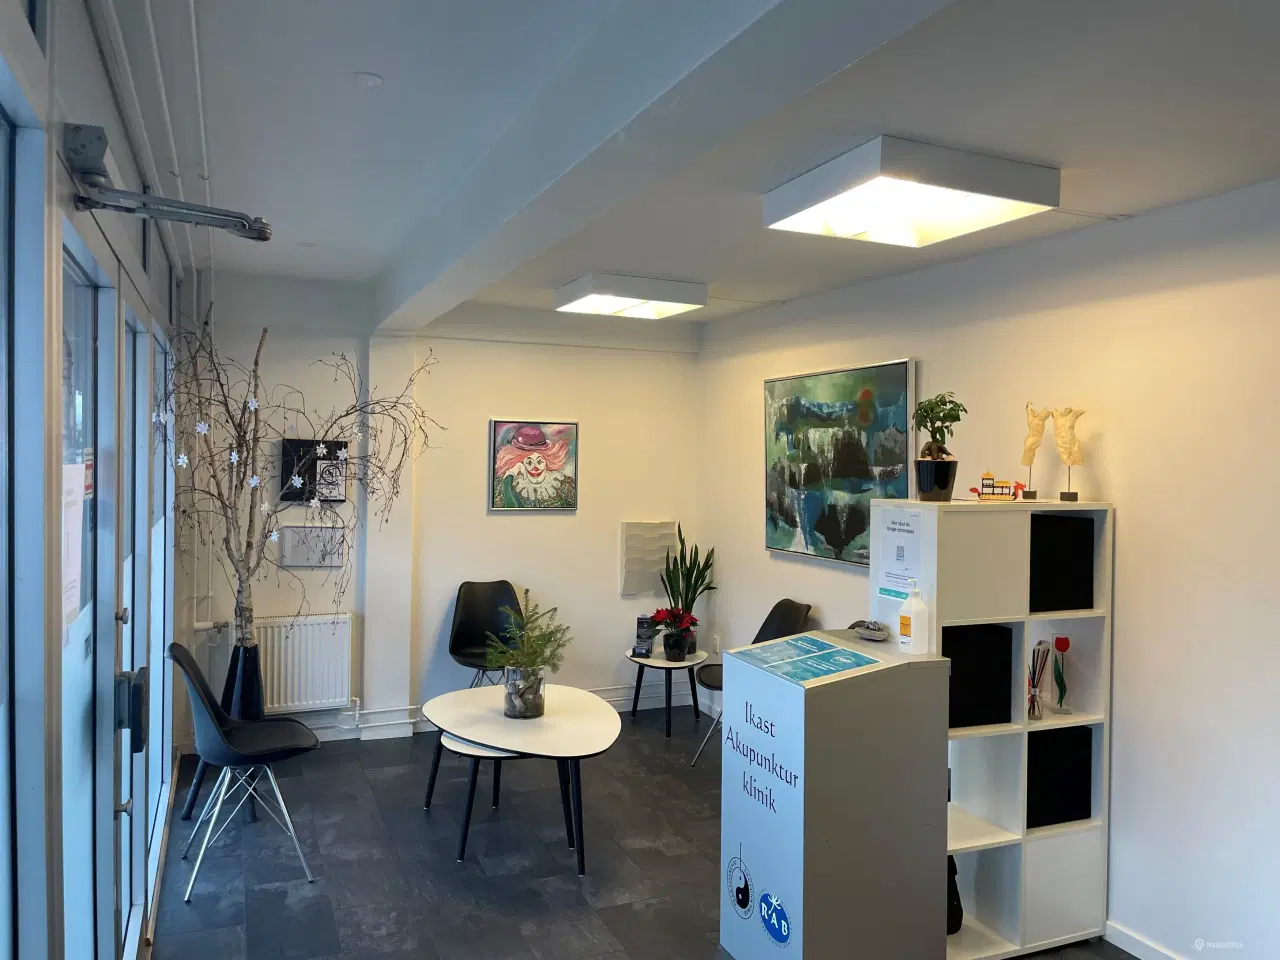 Billede 2 - 110 m2 kontor, klinik, butik centralt i Ikast by.